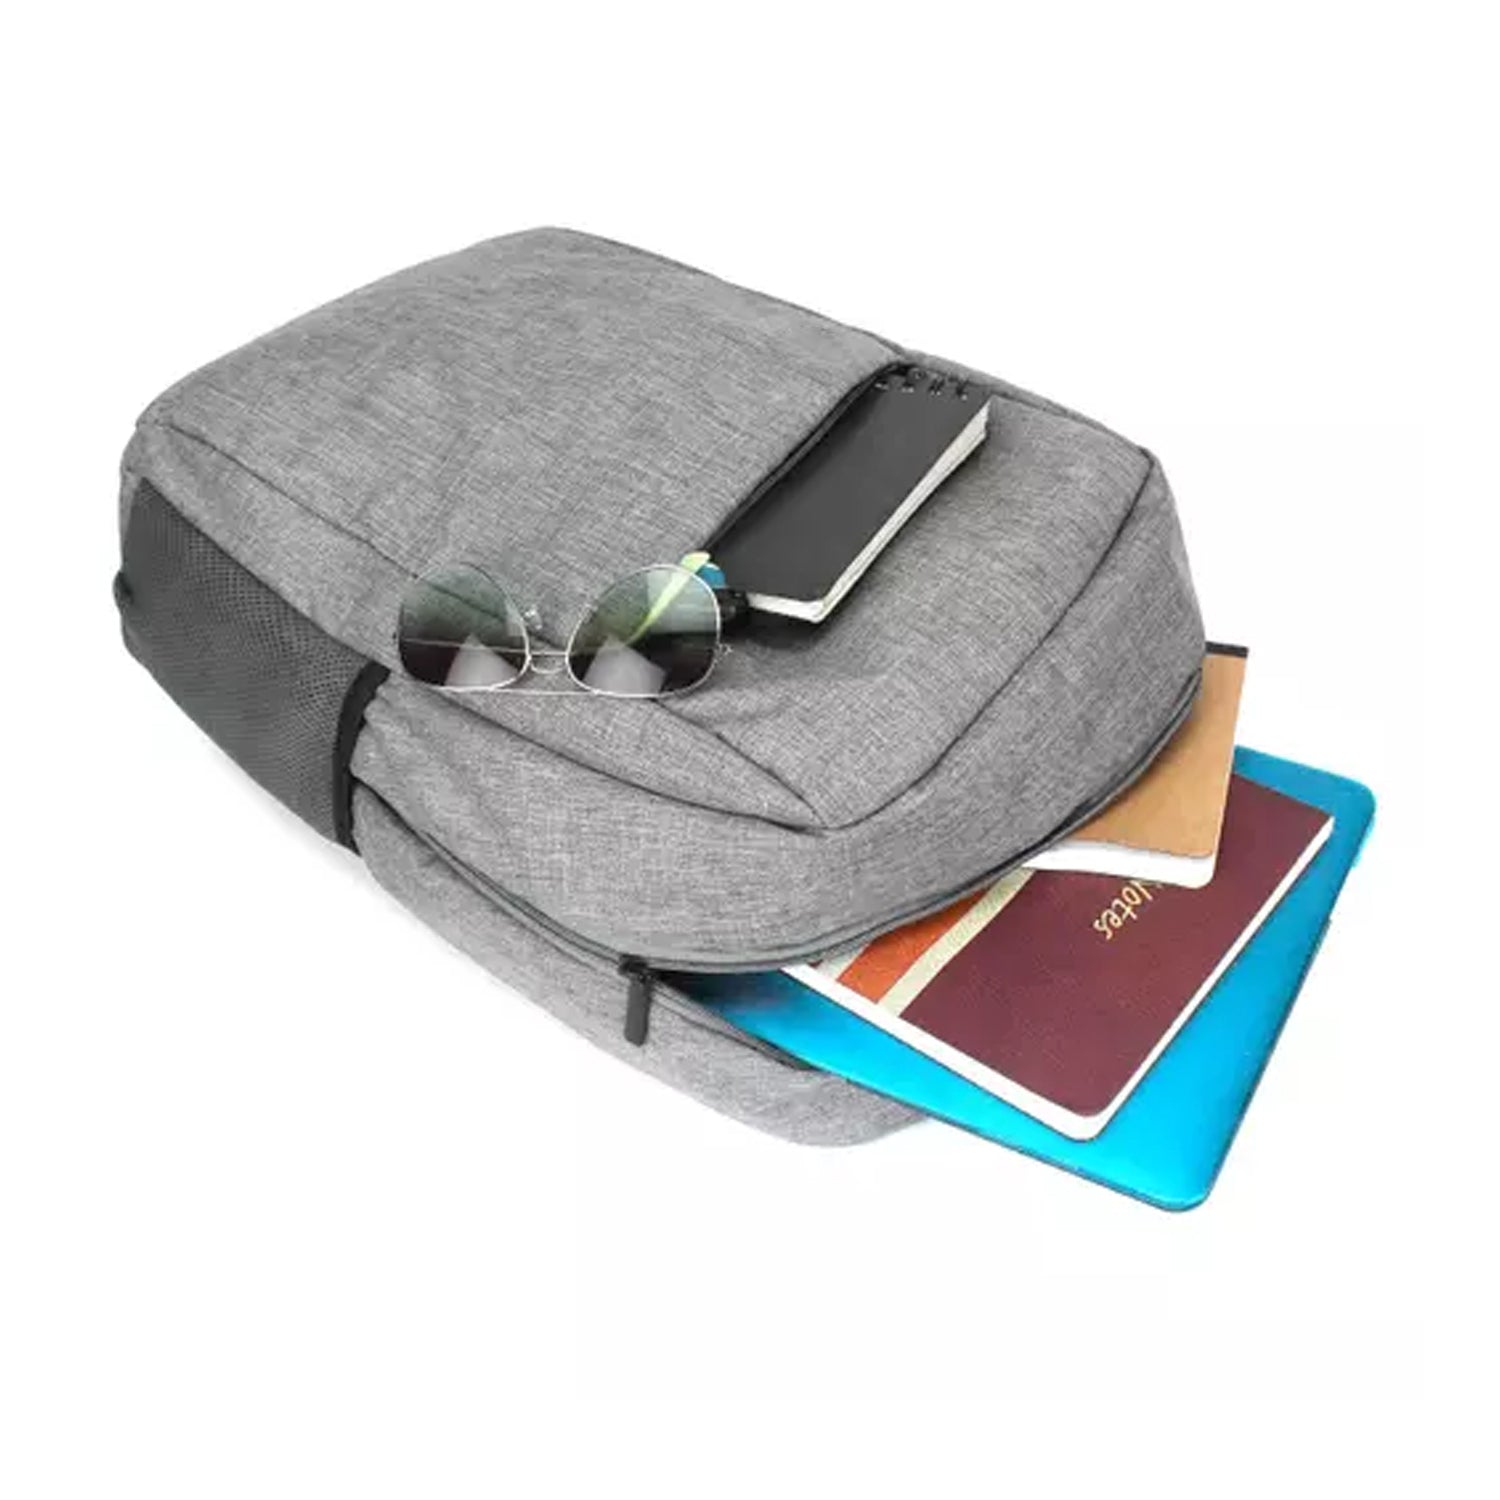 Versatile Laptop Bag: Lightweight & Water-Resistant